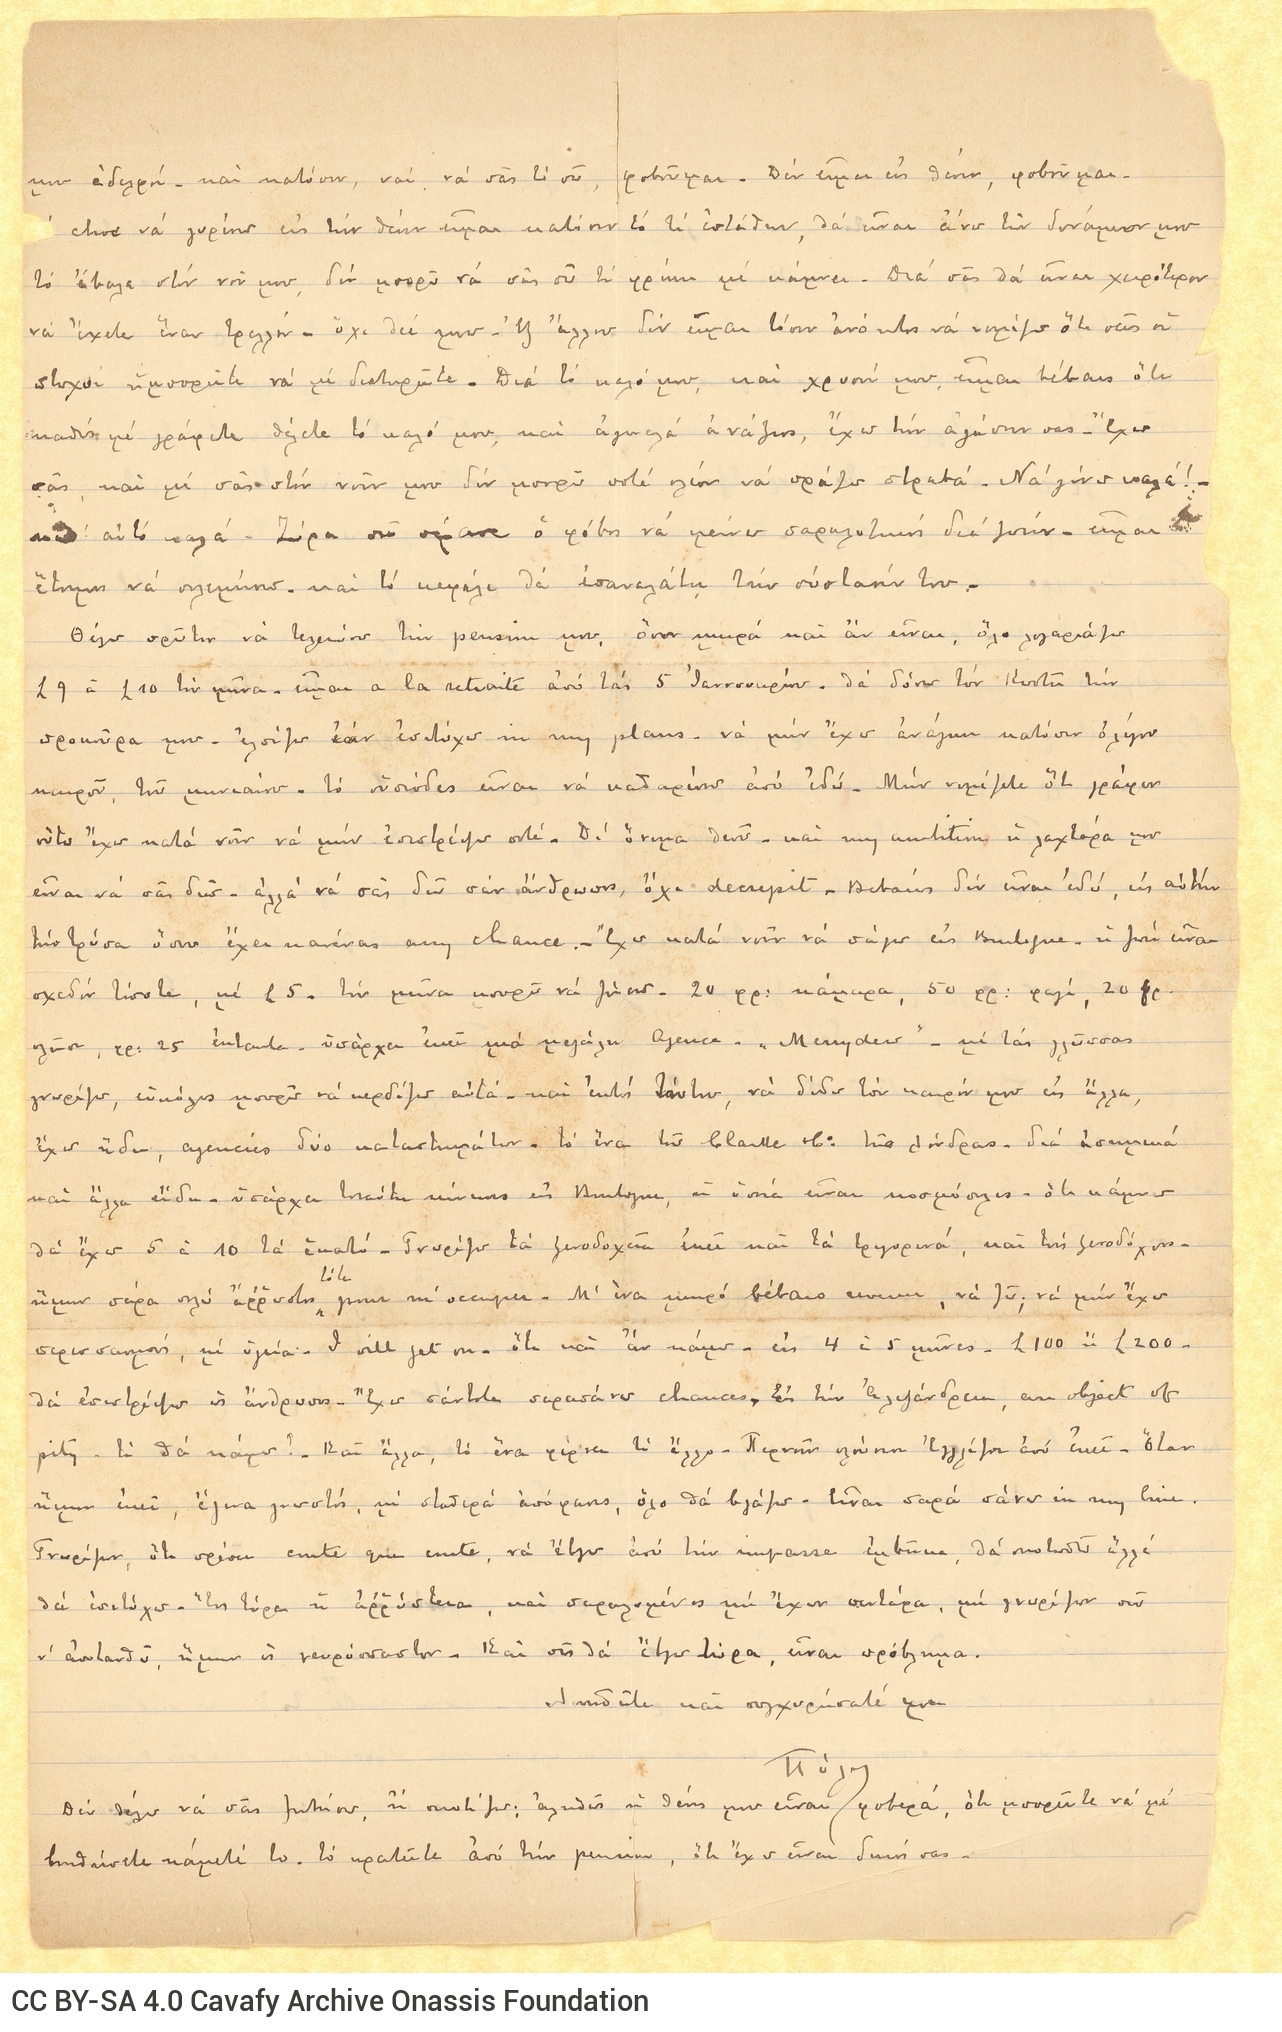 Χειρόγραφη επιστολή του Παύλου Καβάφη προς τον Τζων Καβάφη, στις δύο